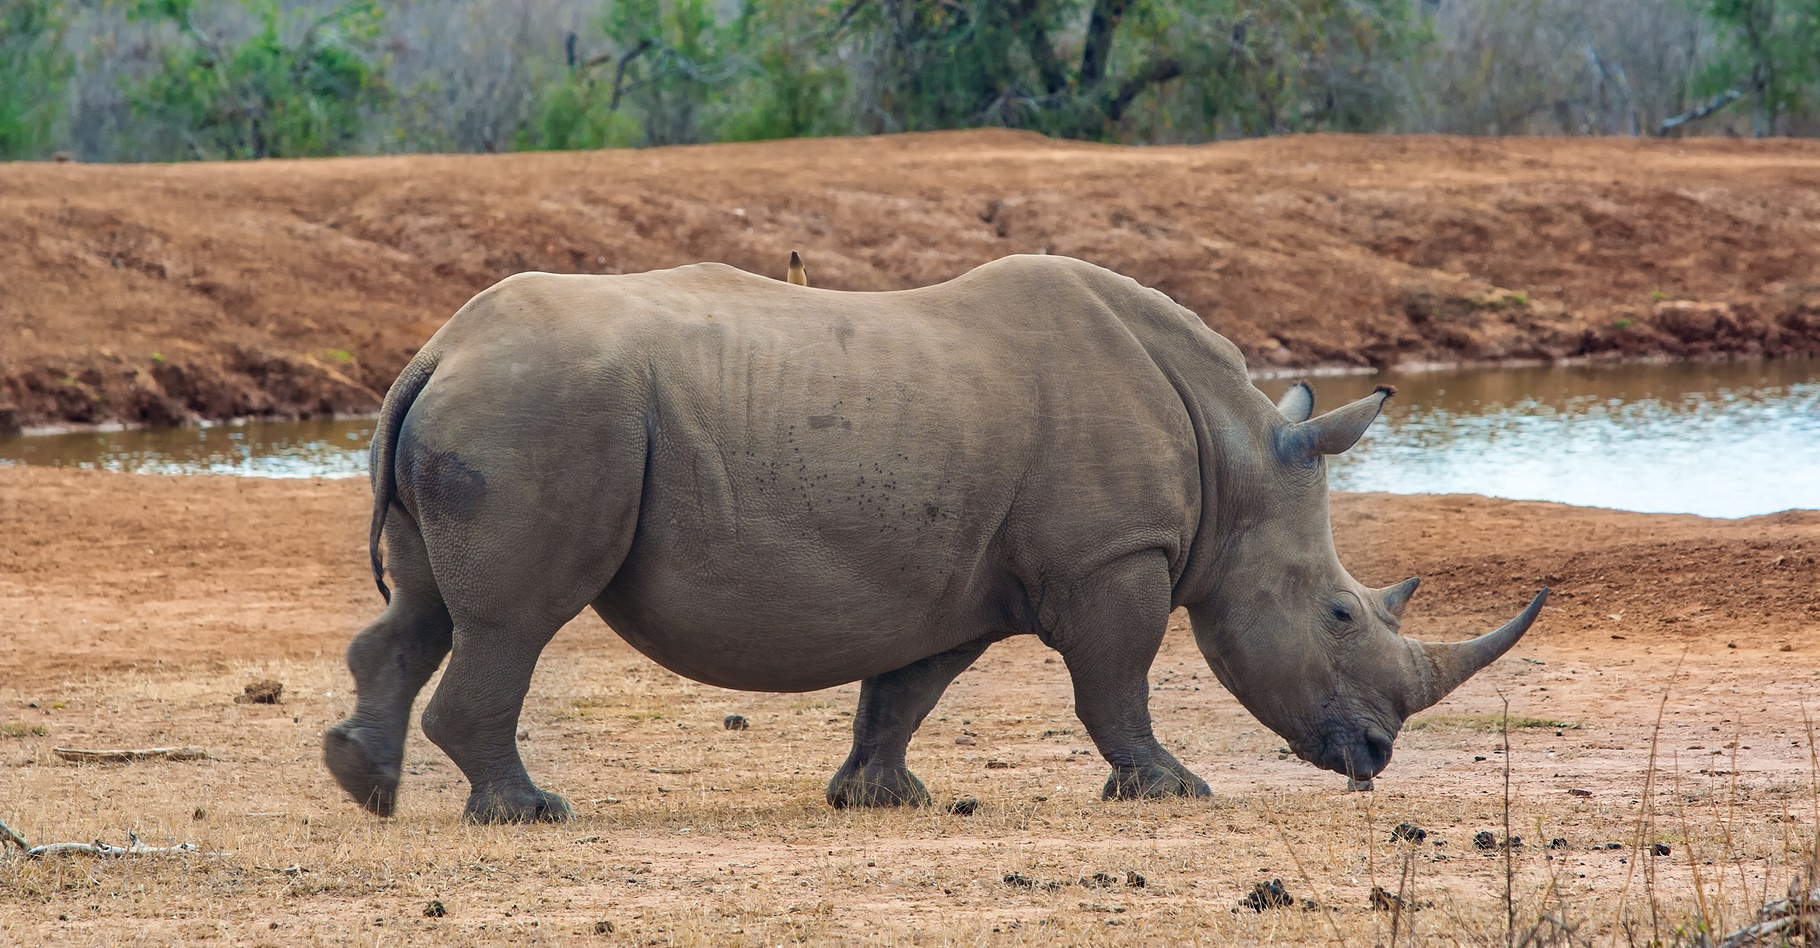 Le rhinocéros blanc d’Afrique a vu&nbsp;sa population augmenter ces dernières années. © Travel Stock, Shutterstock